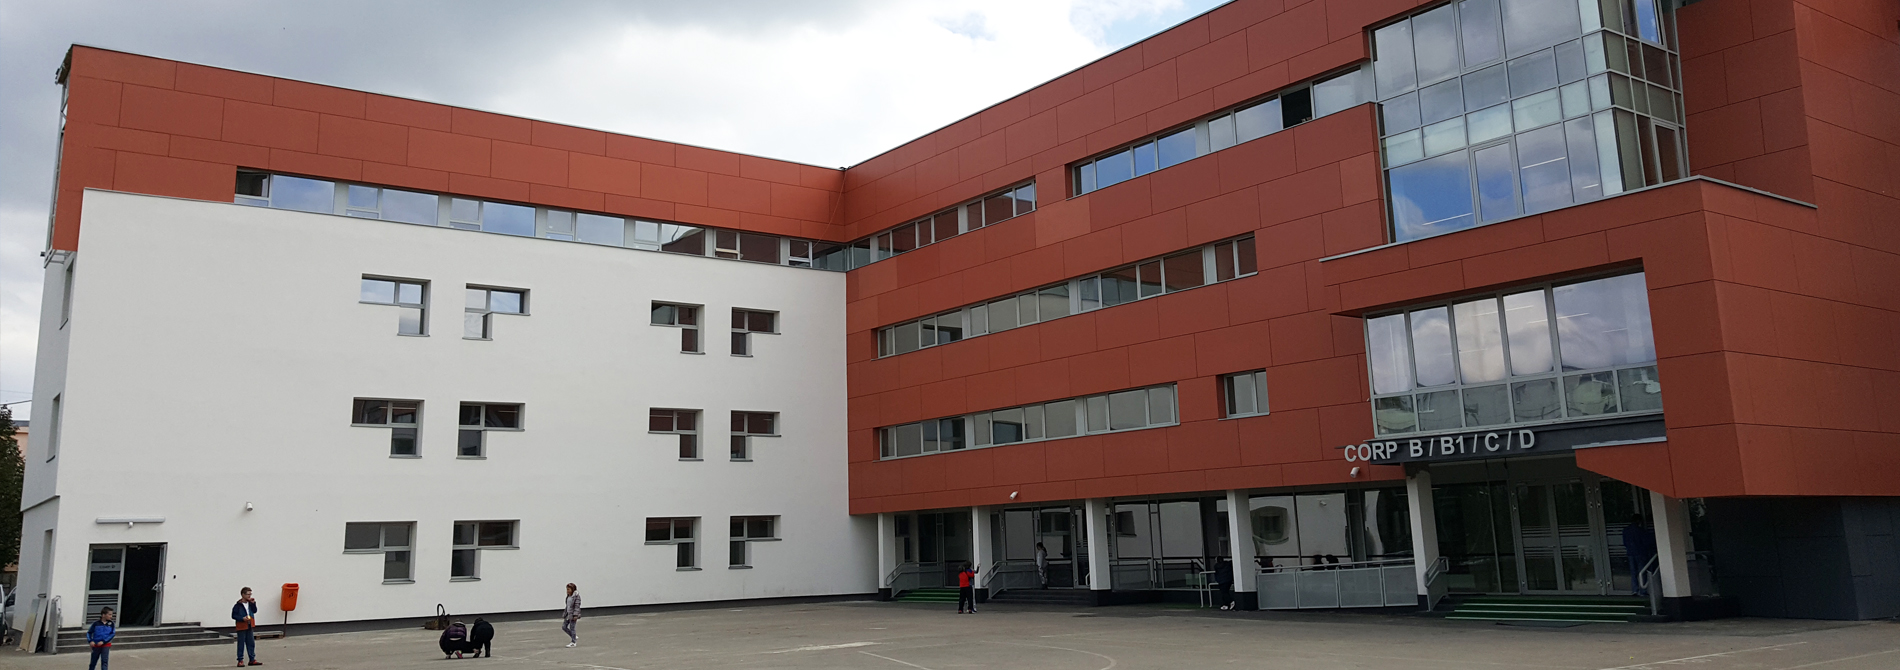 <h2>Școala Generală Ion Agârbiceanu, Cluj-Napoca</h2><p></p>